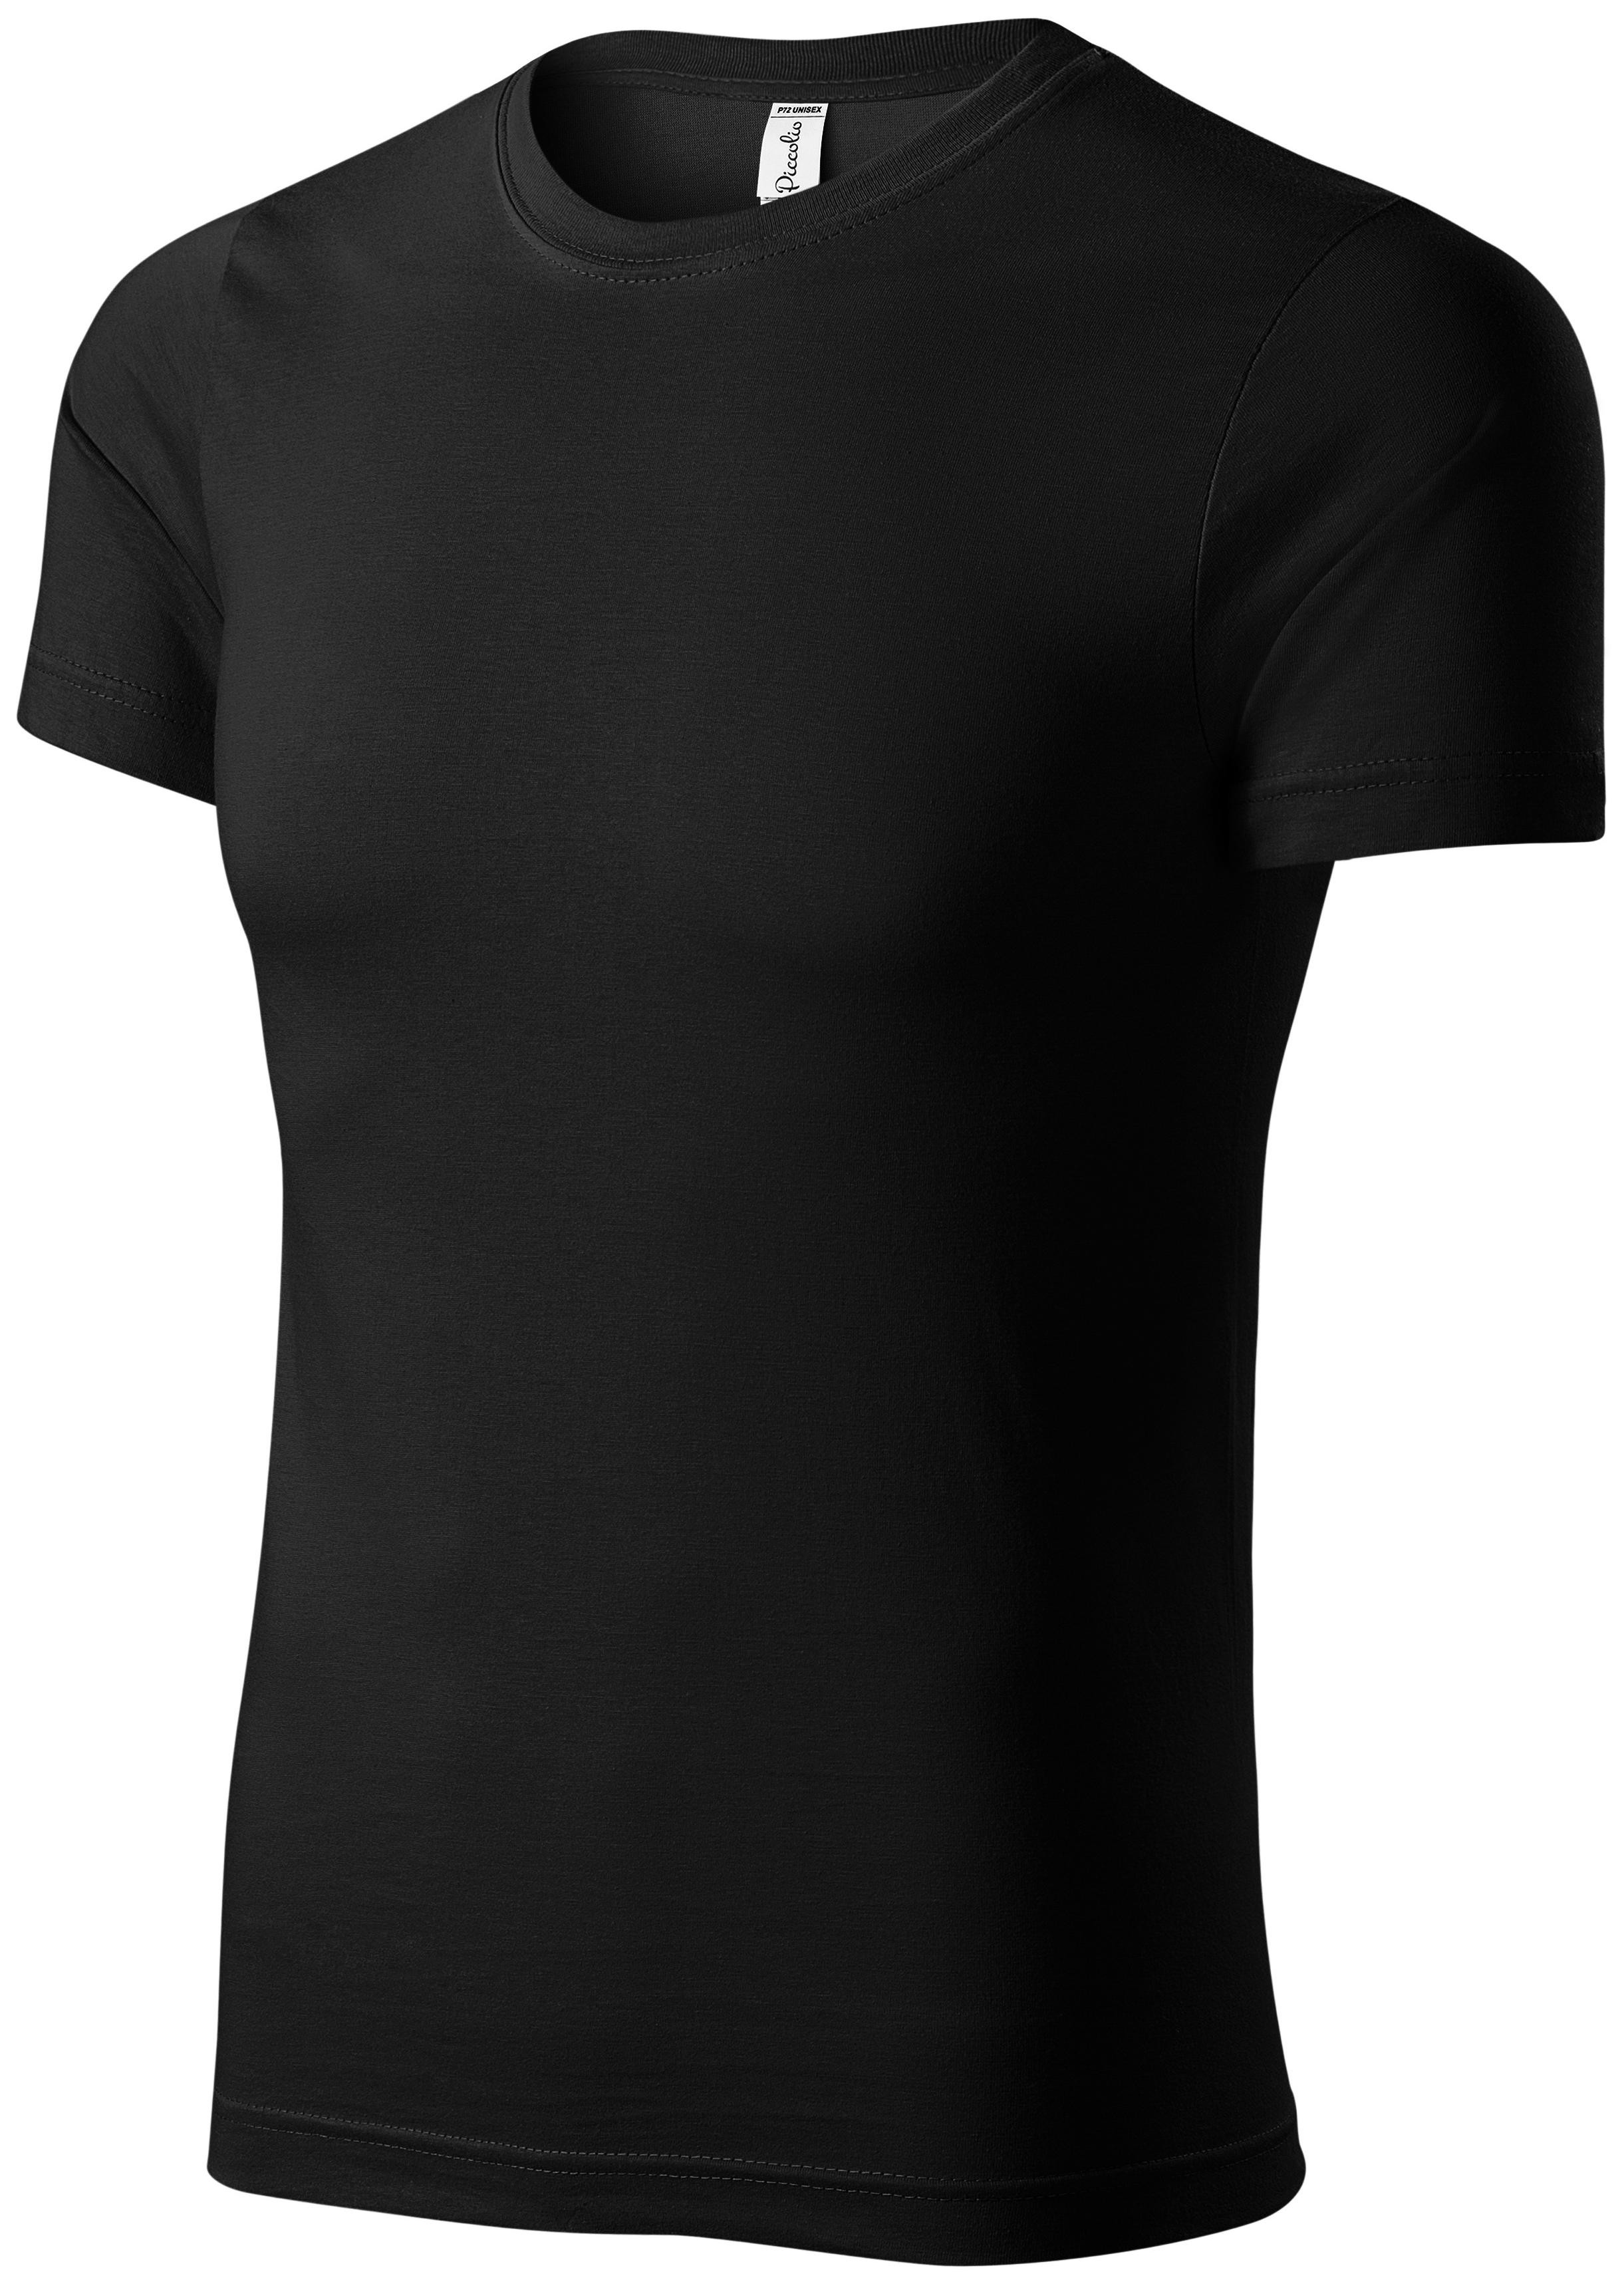 Detské ľahké tričko, čierna, 122cm / 6rokov